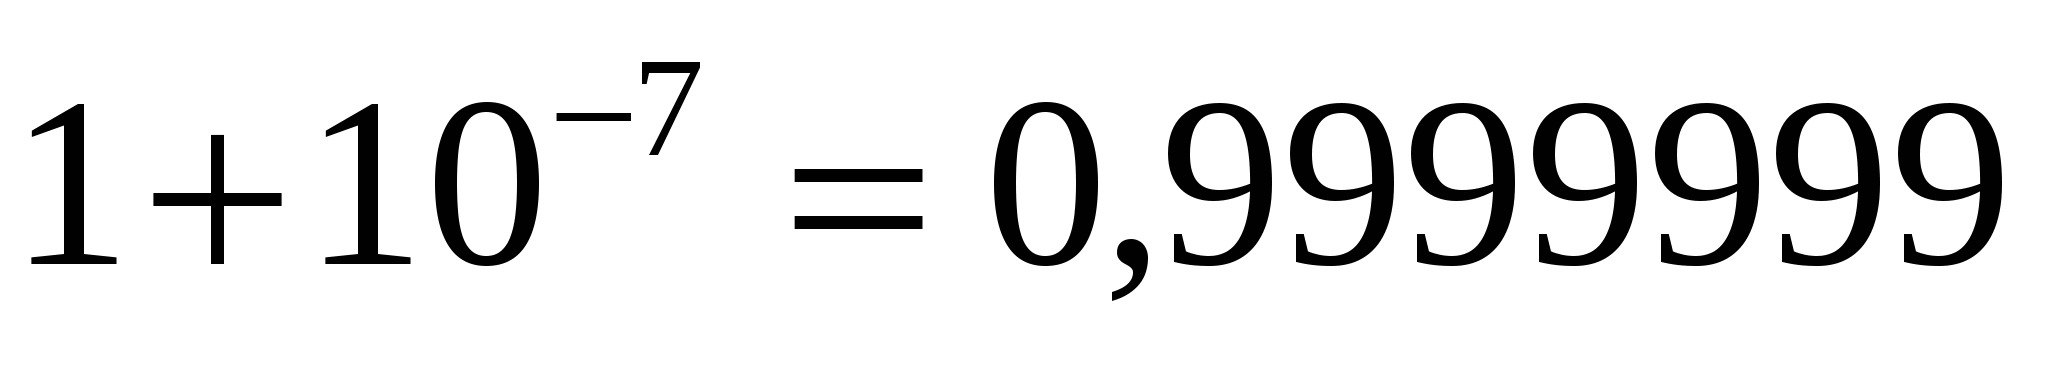 Урок математики (проблемно-эвристический) по теме: «Число е. Понятие натурального логарифма. Производная показательной функции».